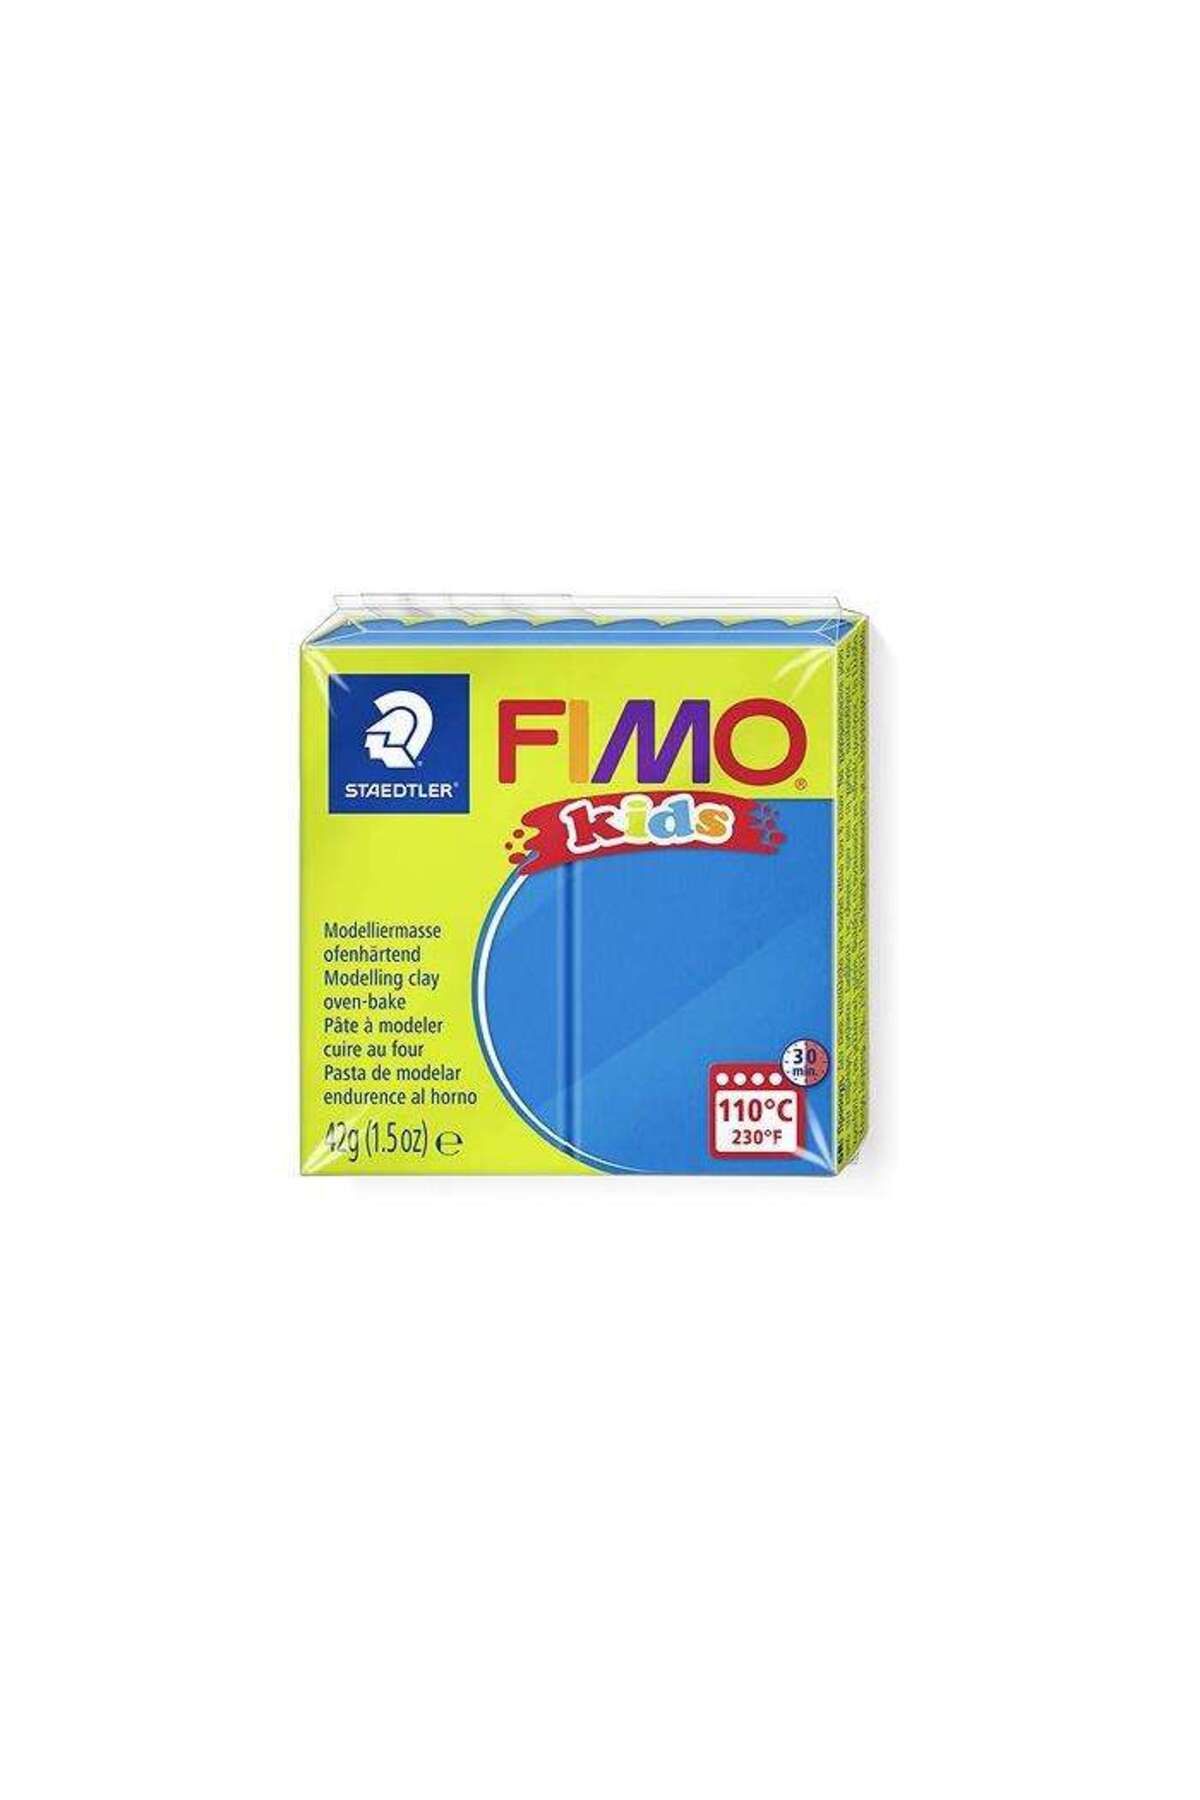 Staedtler Fimo Kids Modelleme Kili 42 g Blue 3